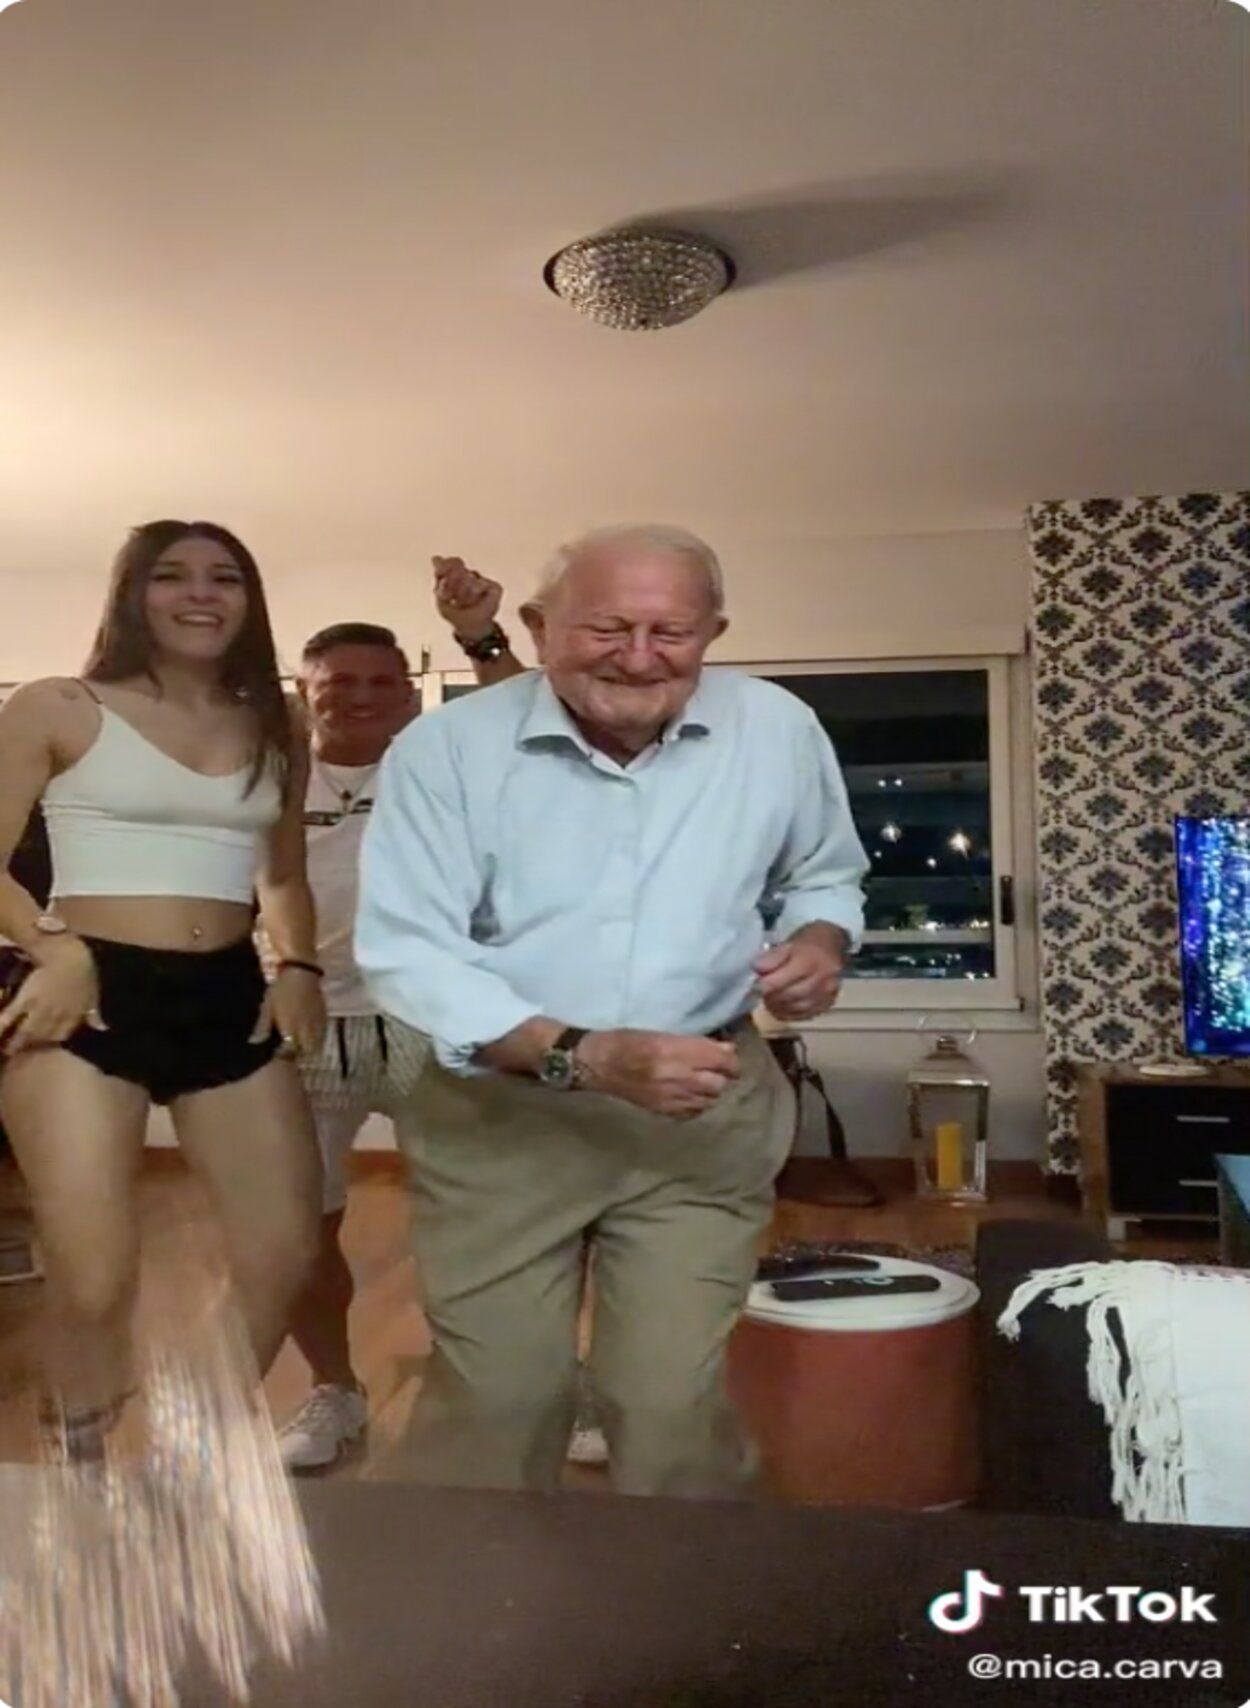 VÍDEO: Una joven le enseña a su abuelo unos pasos de baile y esto es lo que pasa